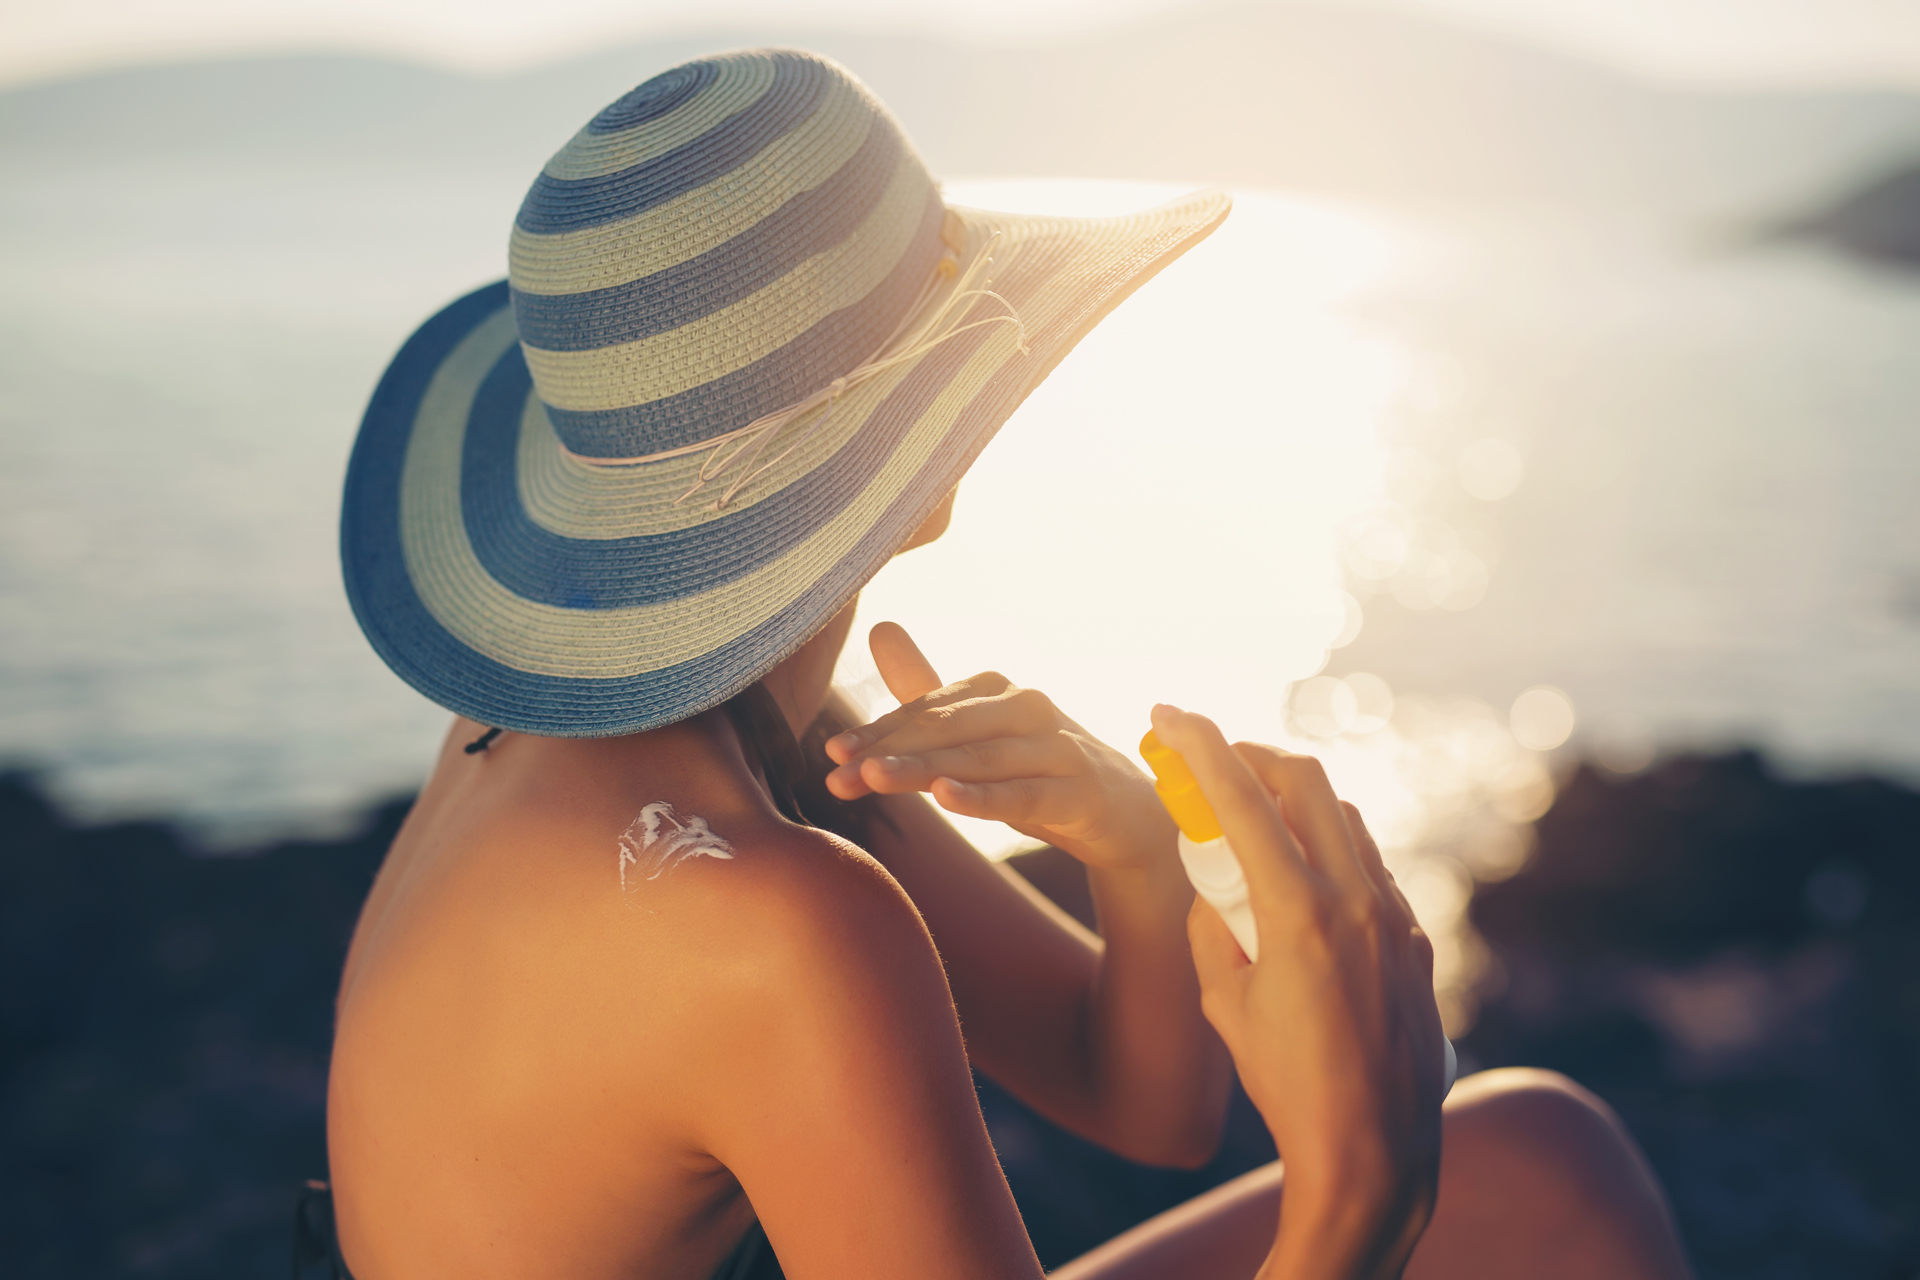 La exposición excesiva al sol puede producir envejecimiento de la piel, cataratas y cáncer de piel (Getty Images)